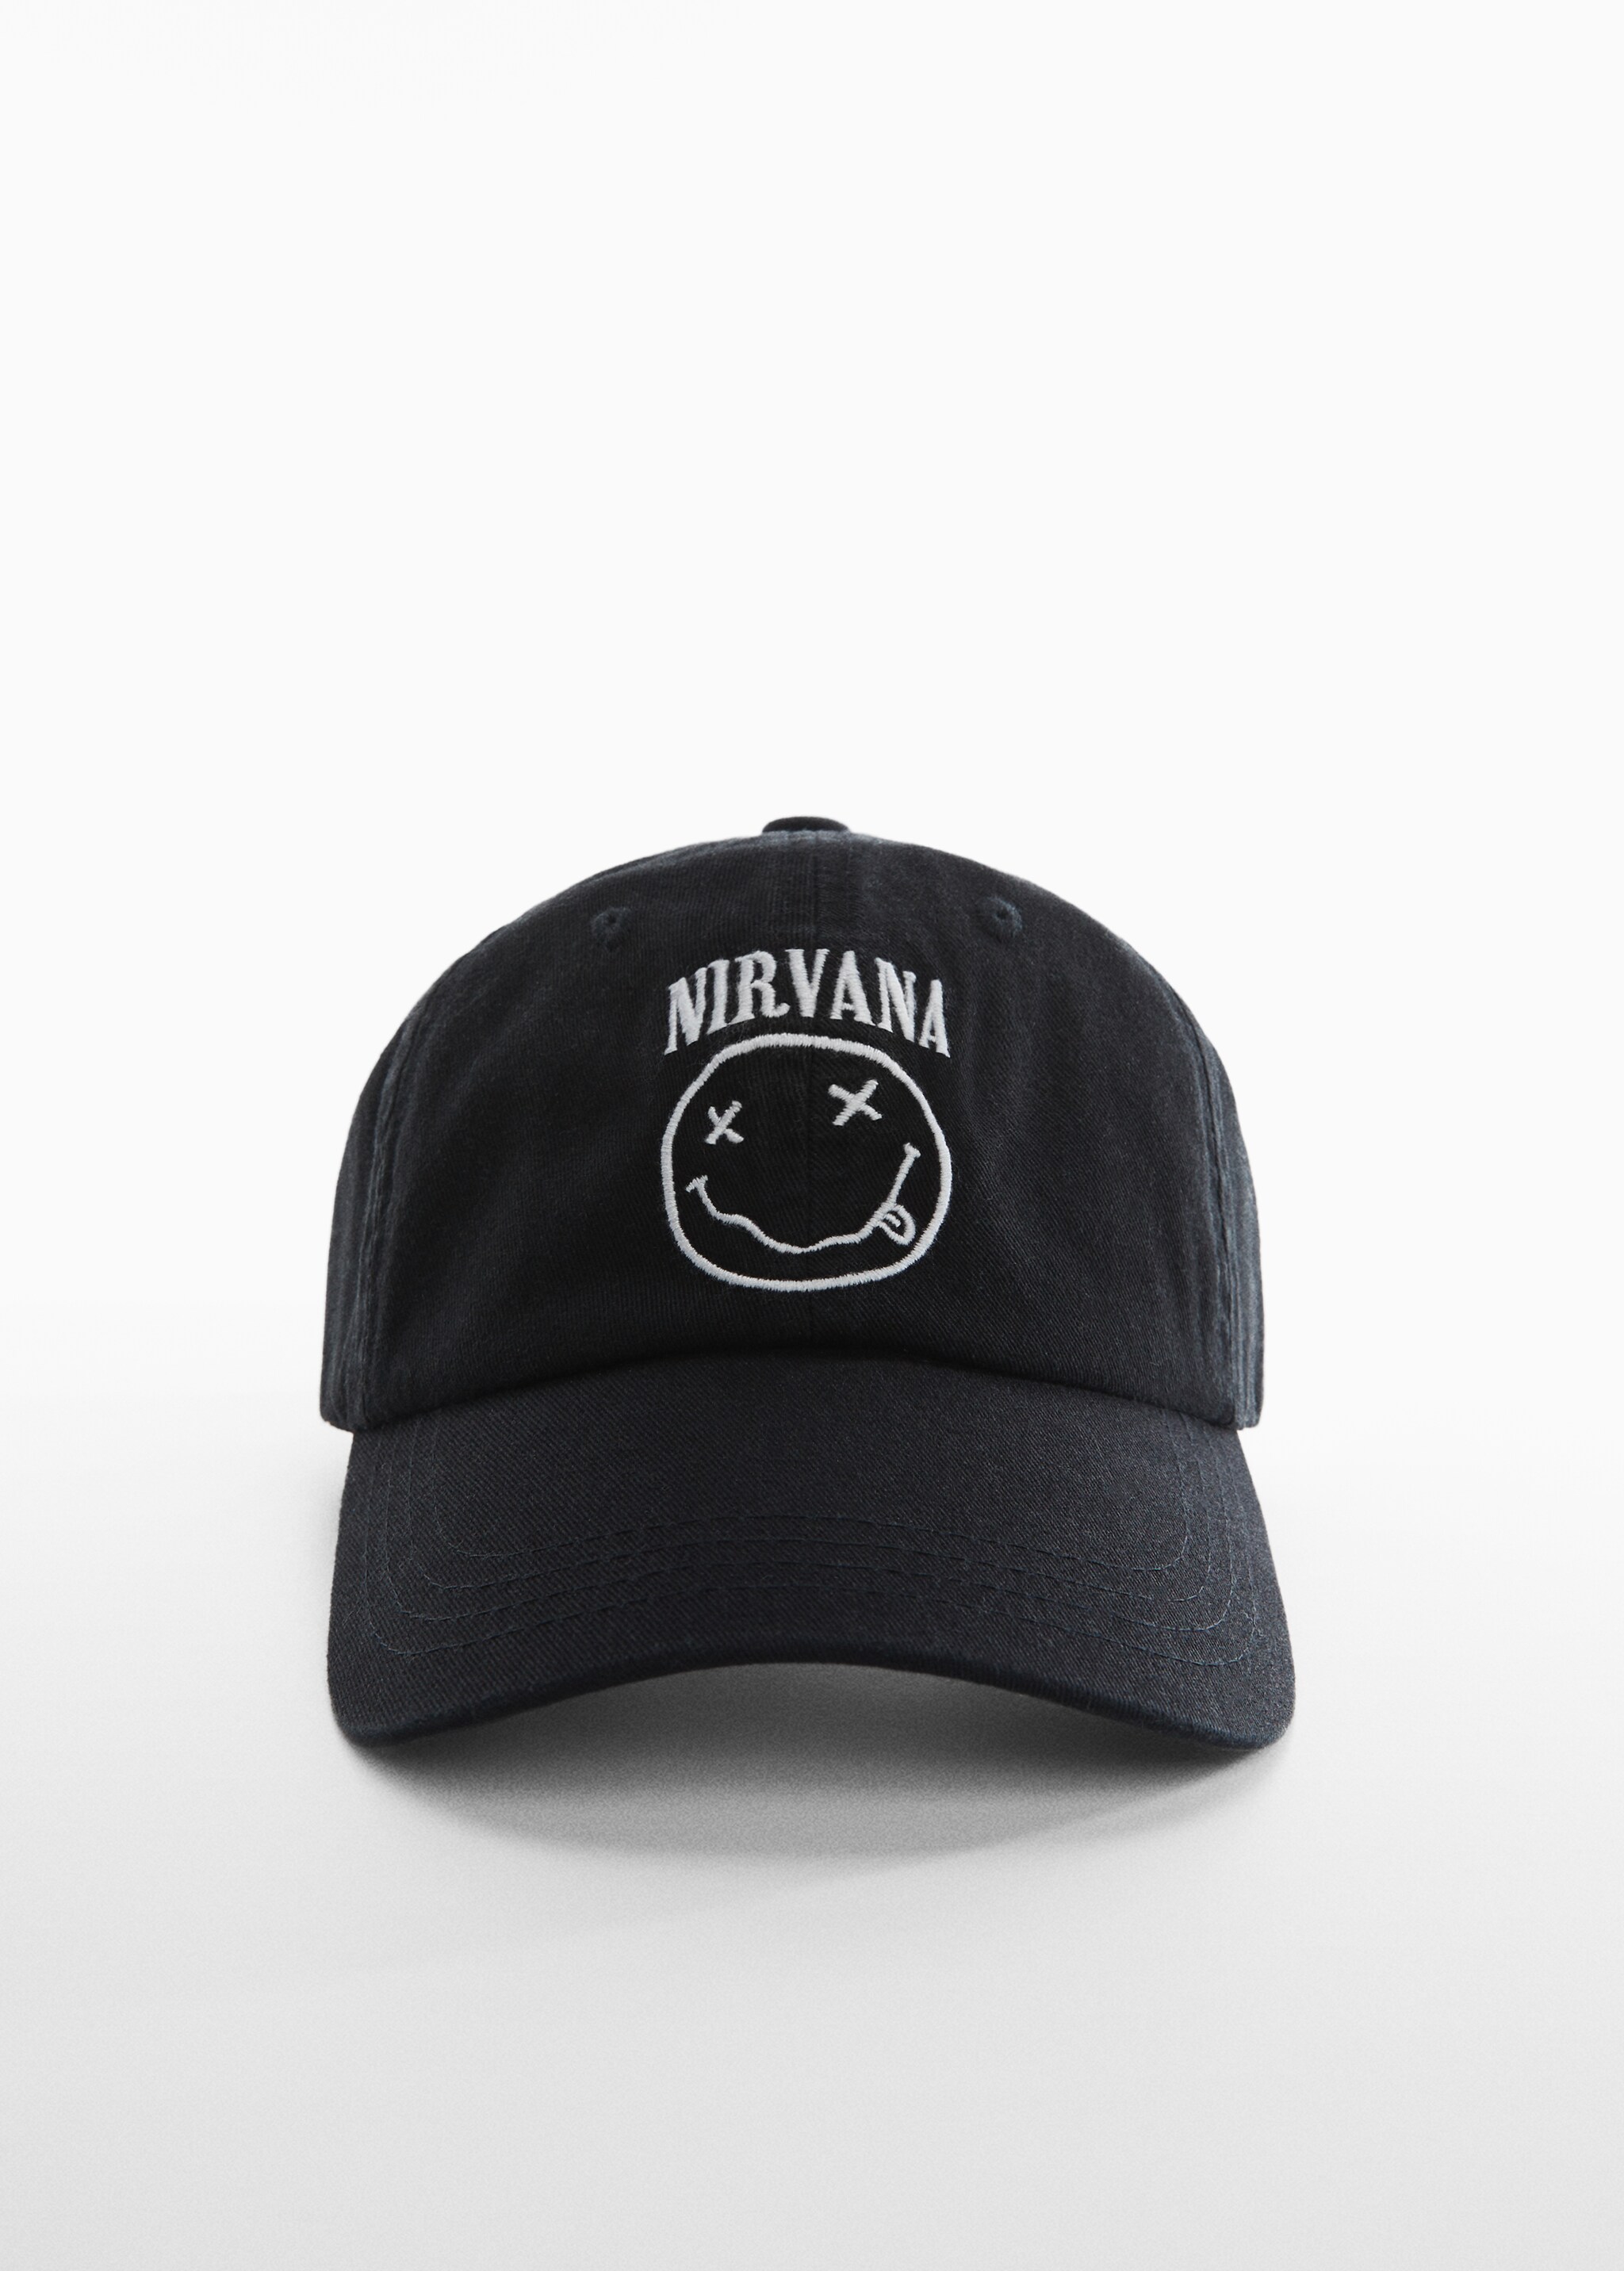 Kappe mit Nirvana-Design - Mittlere Ansicht